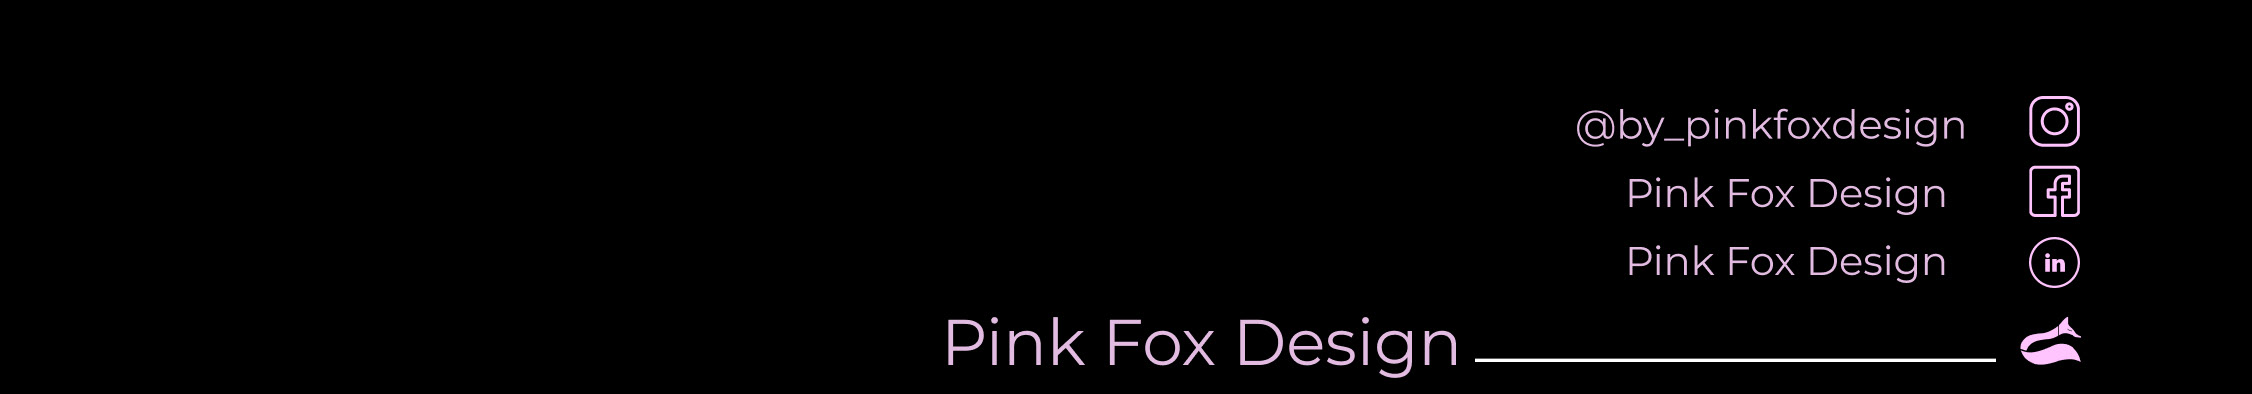 Pink Fox profil başlığı